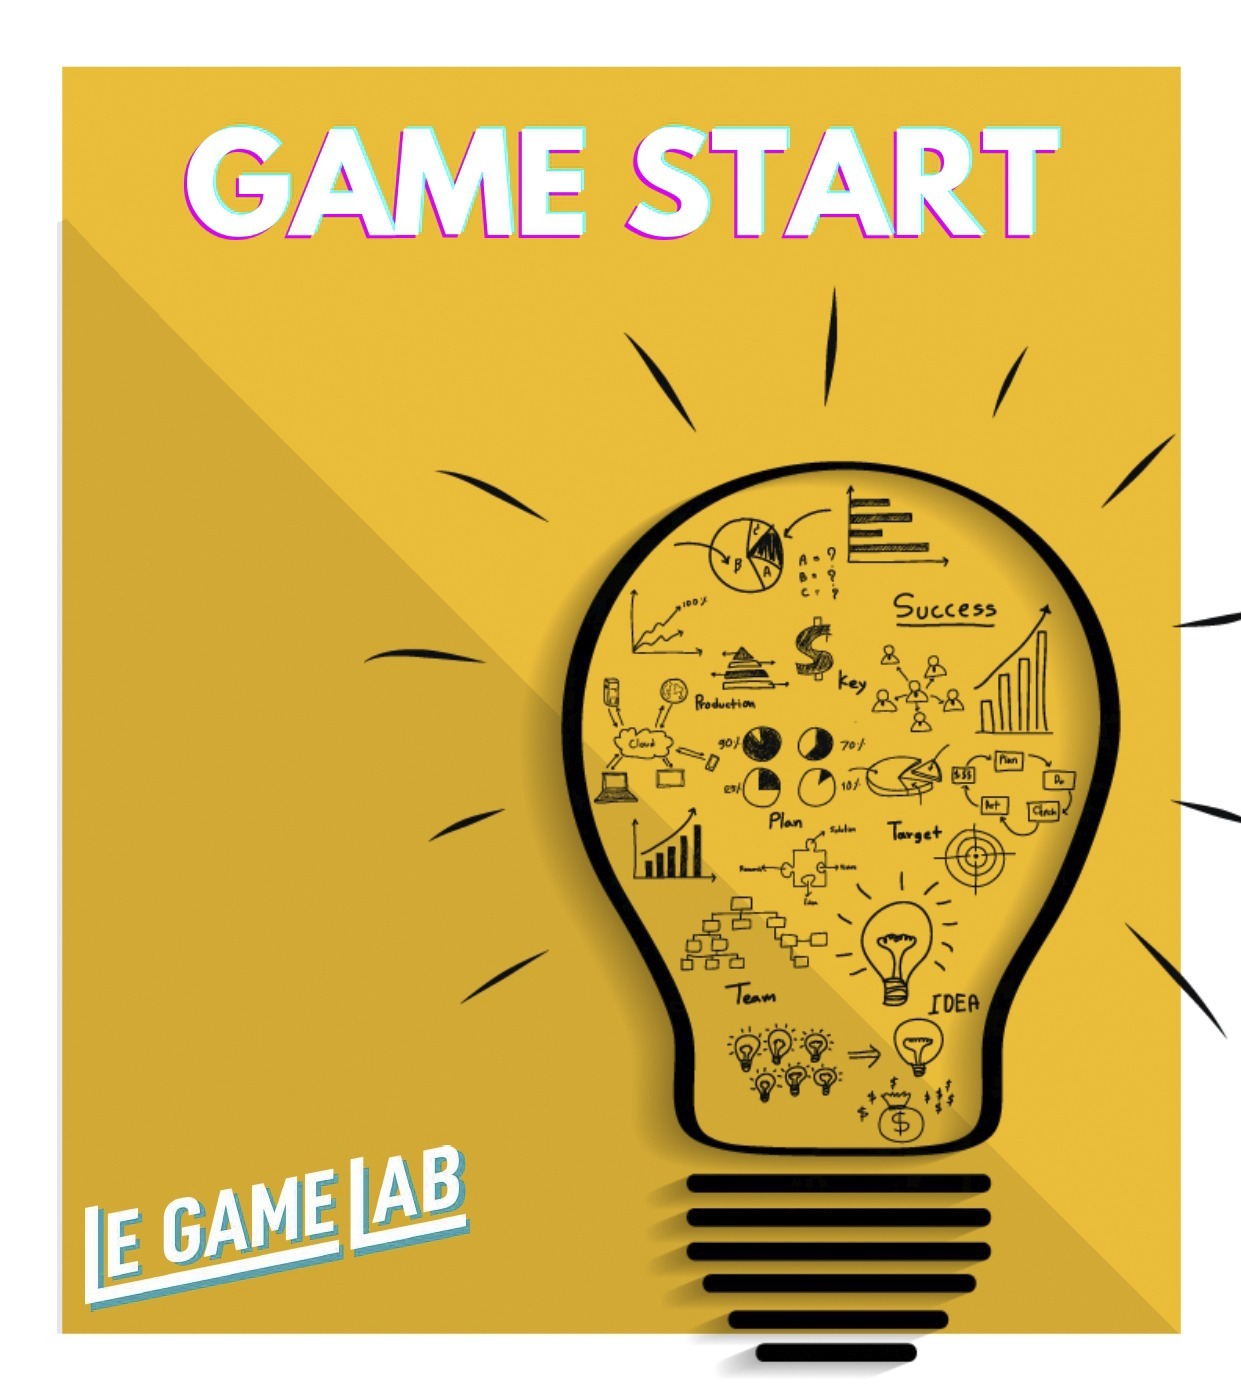 Lire la suite à propos de l’article Game Start : atelier de “design thinking”